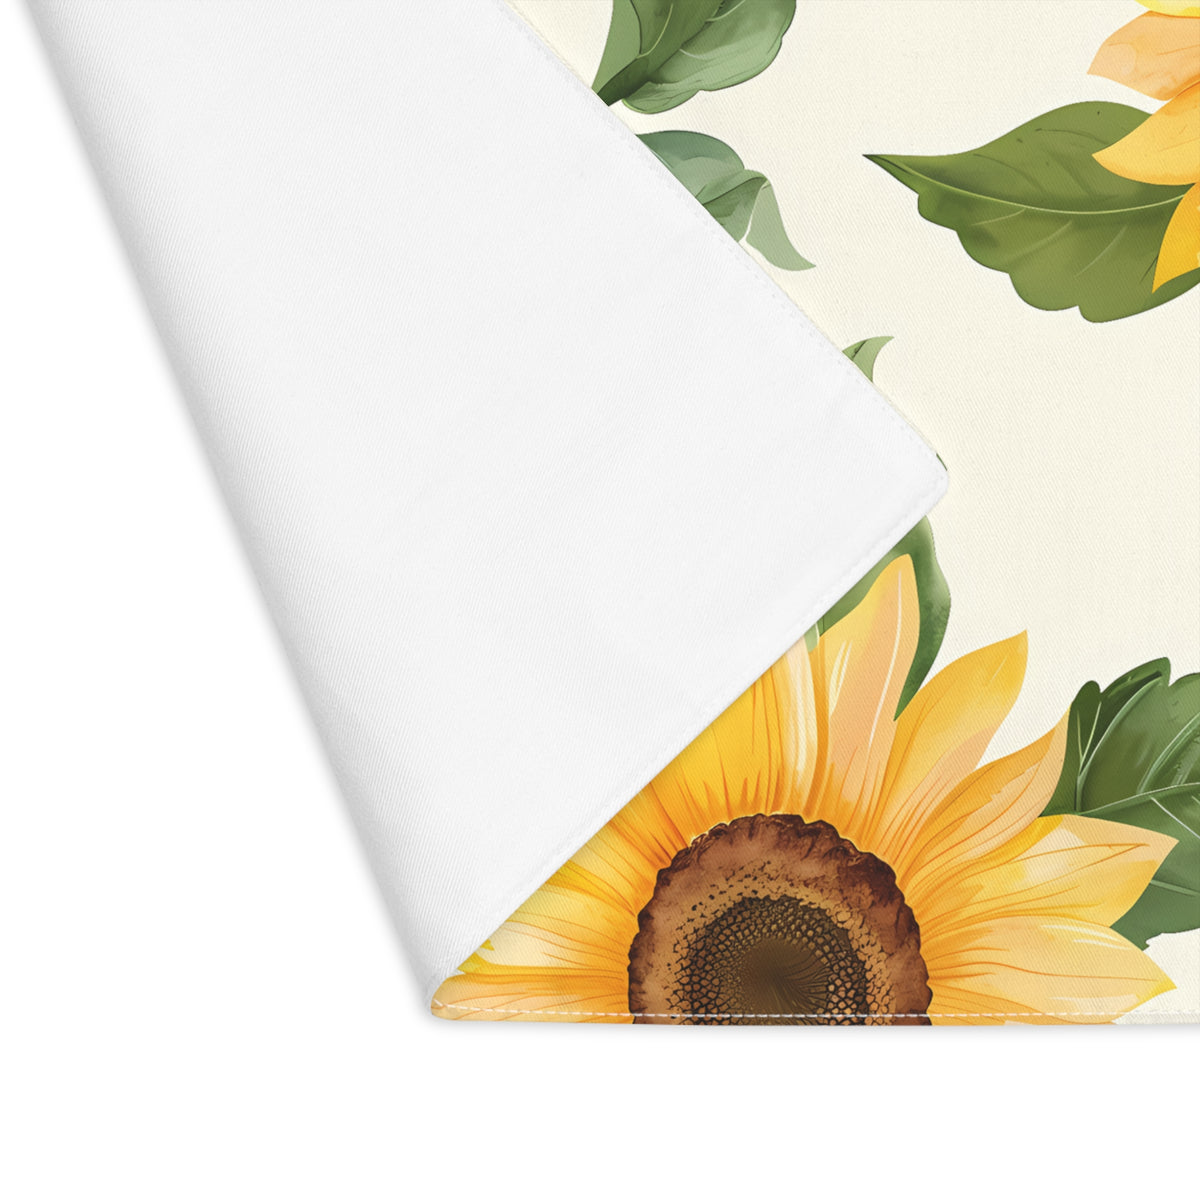 Decorative Cotton Place Mat with Elegant Sunflower Design (18&quot; x 14&quot;)